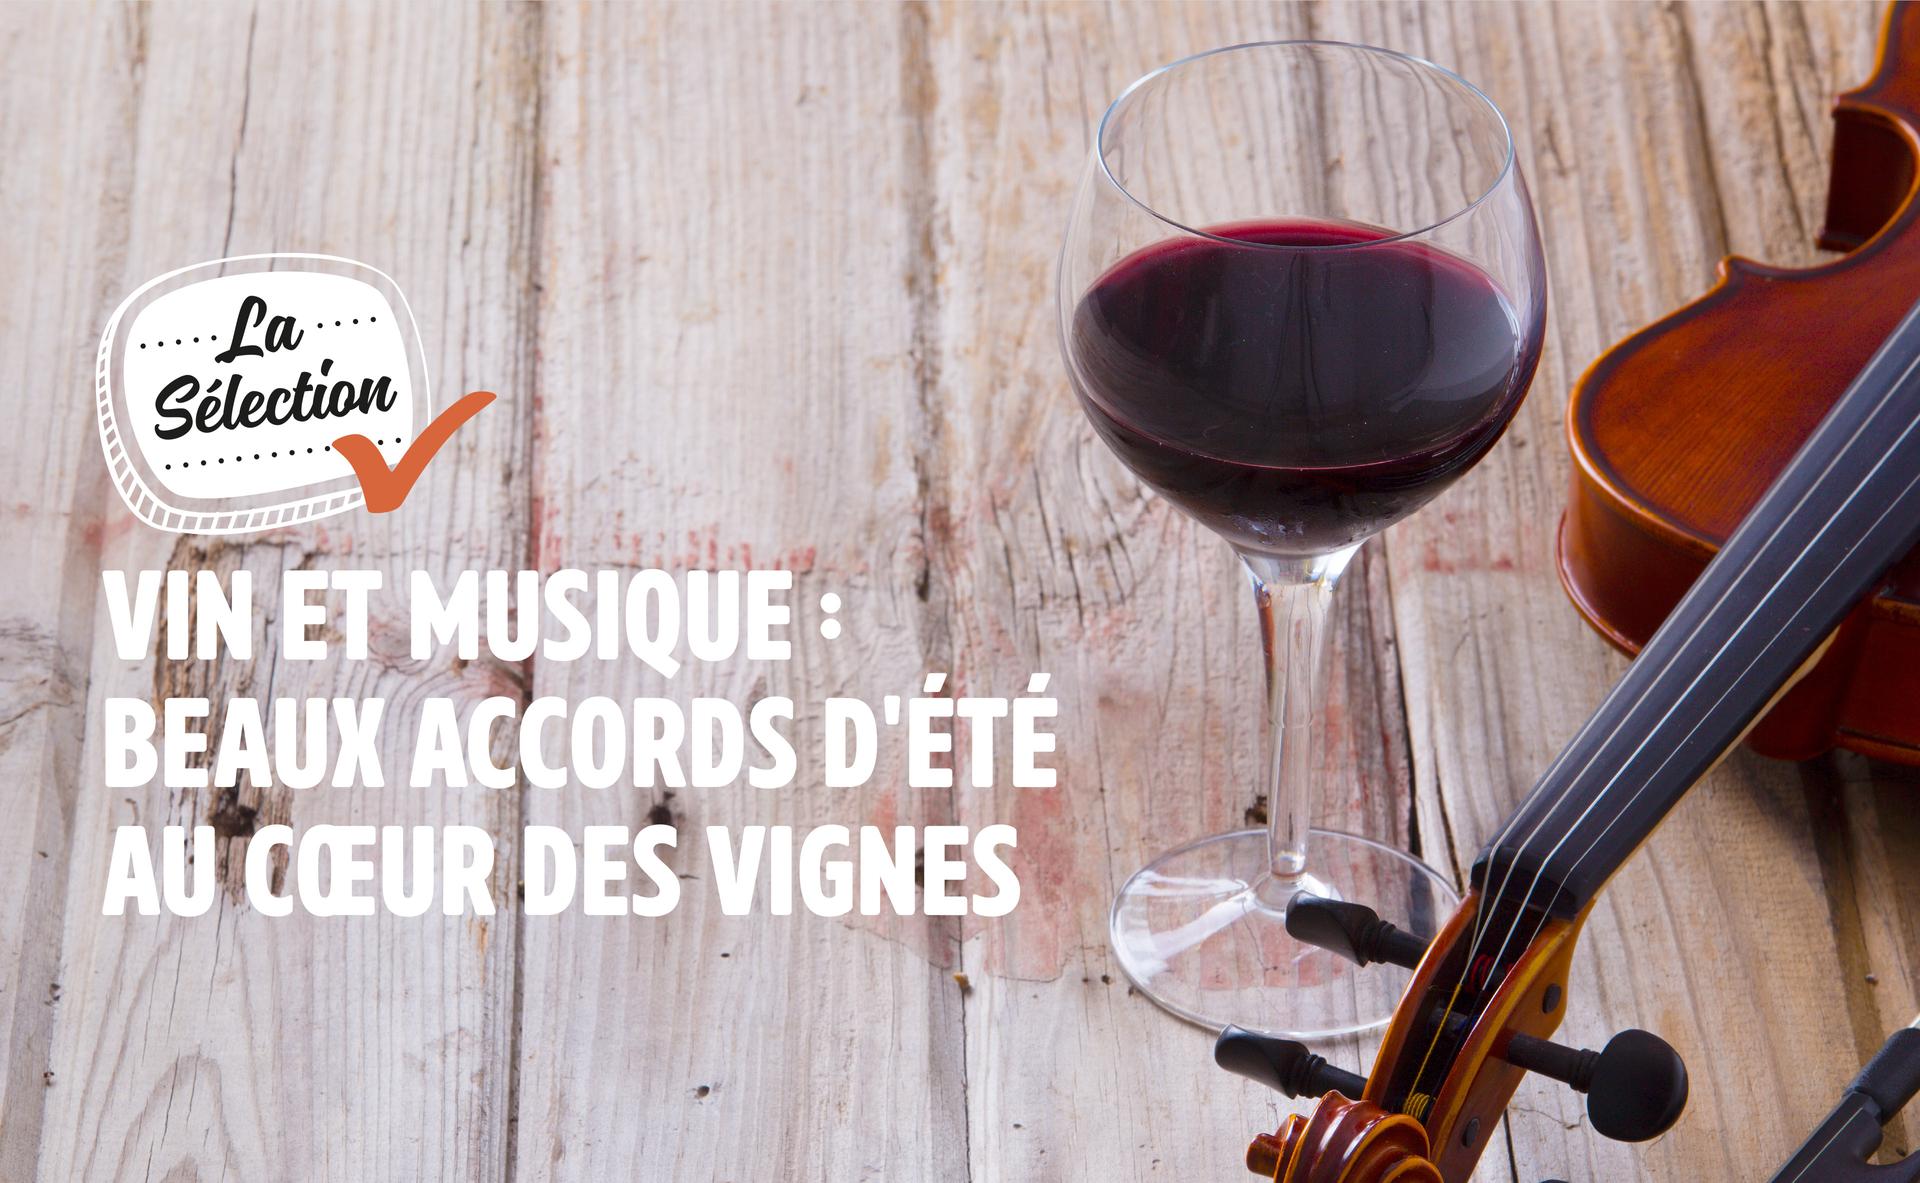 Vin et musique : beaux accords d'été au cœur des vignes